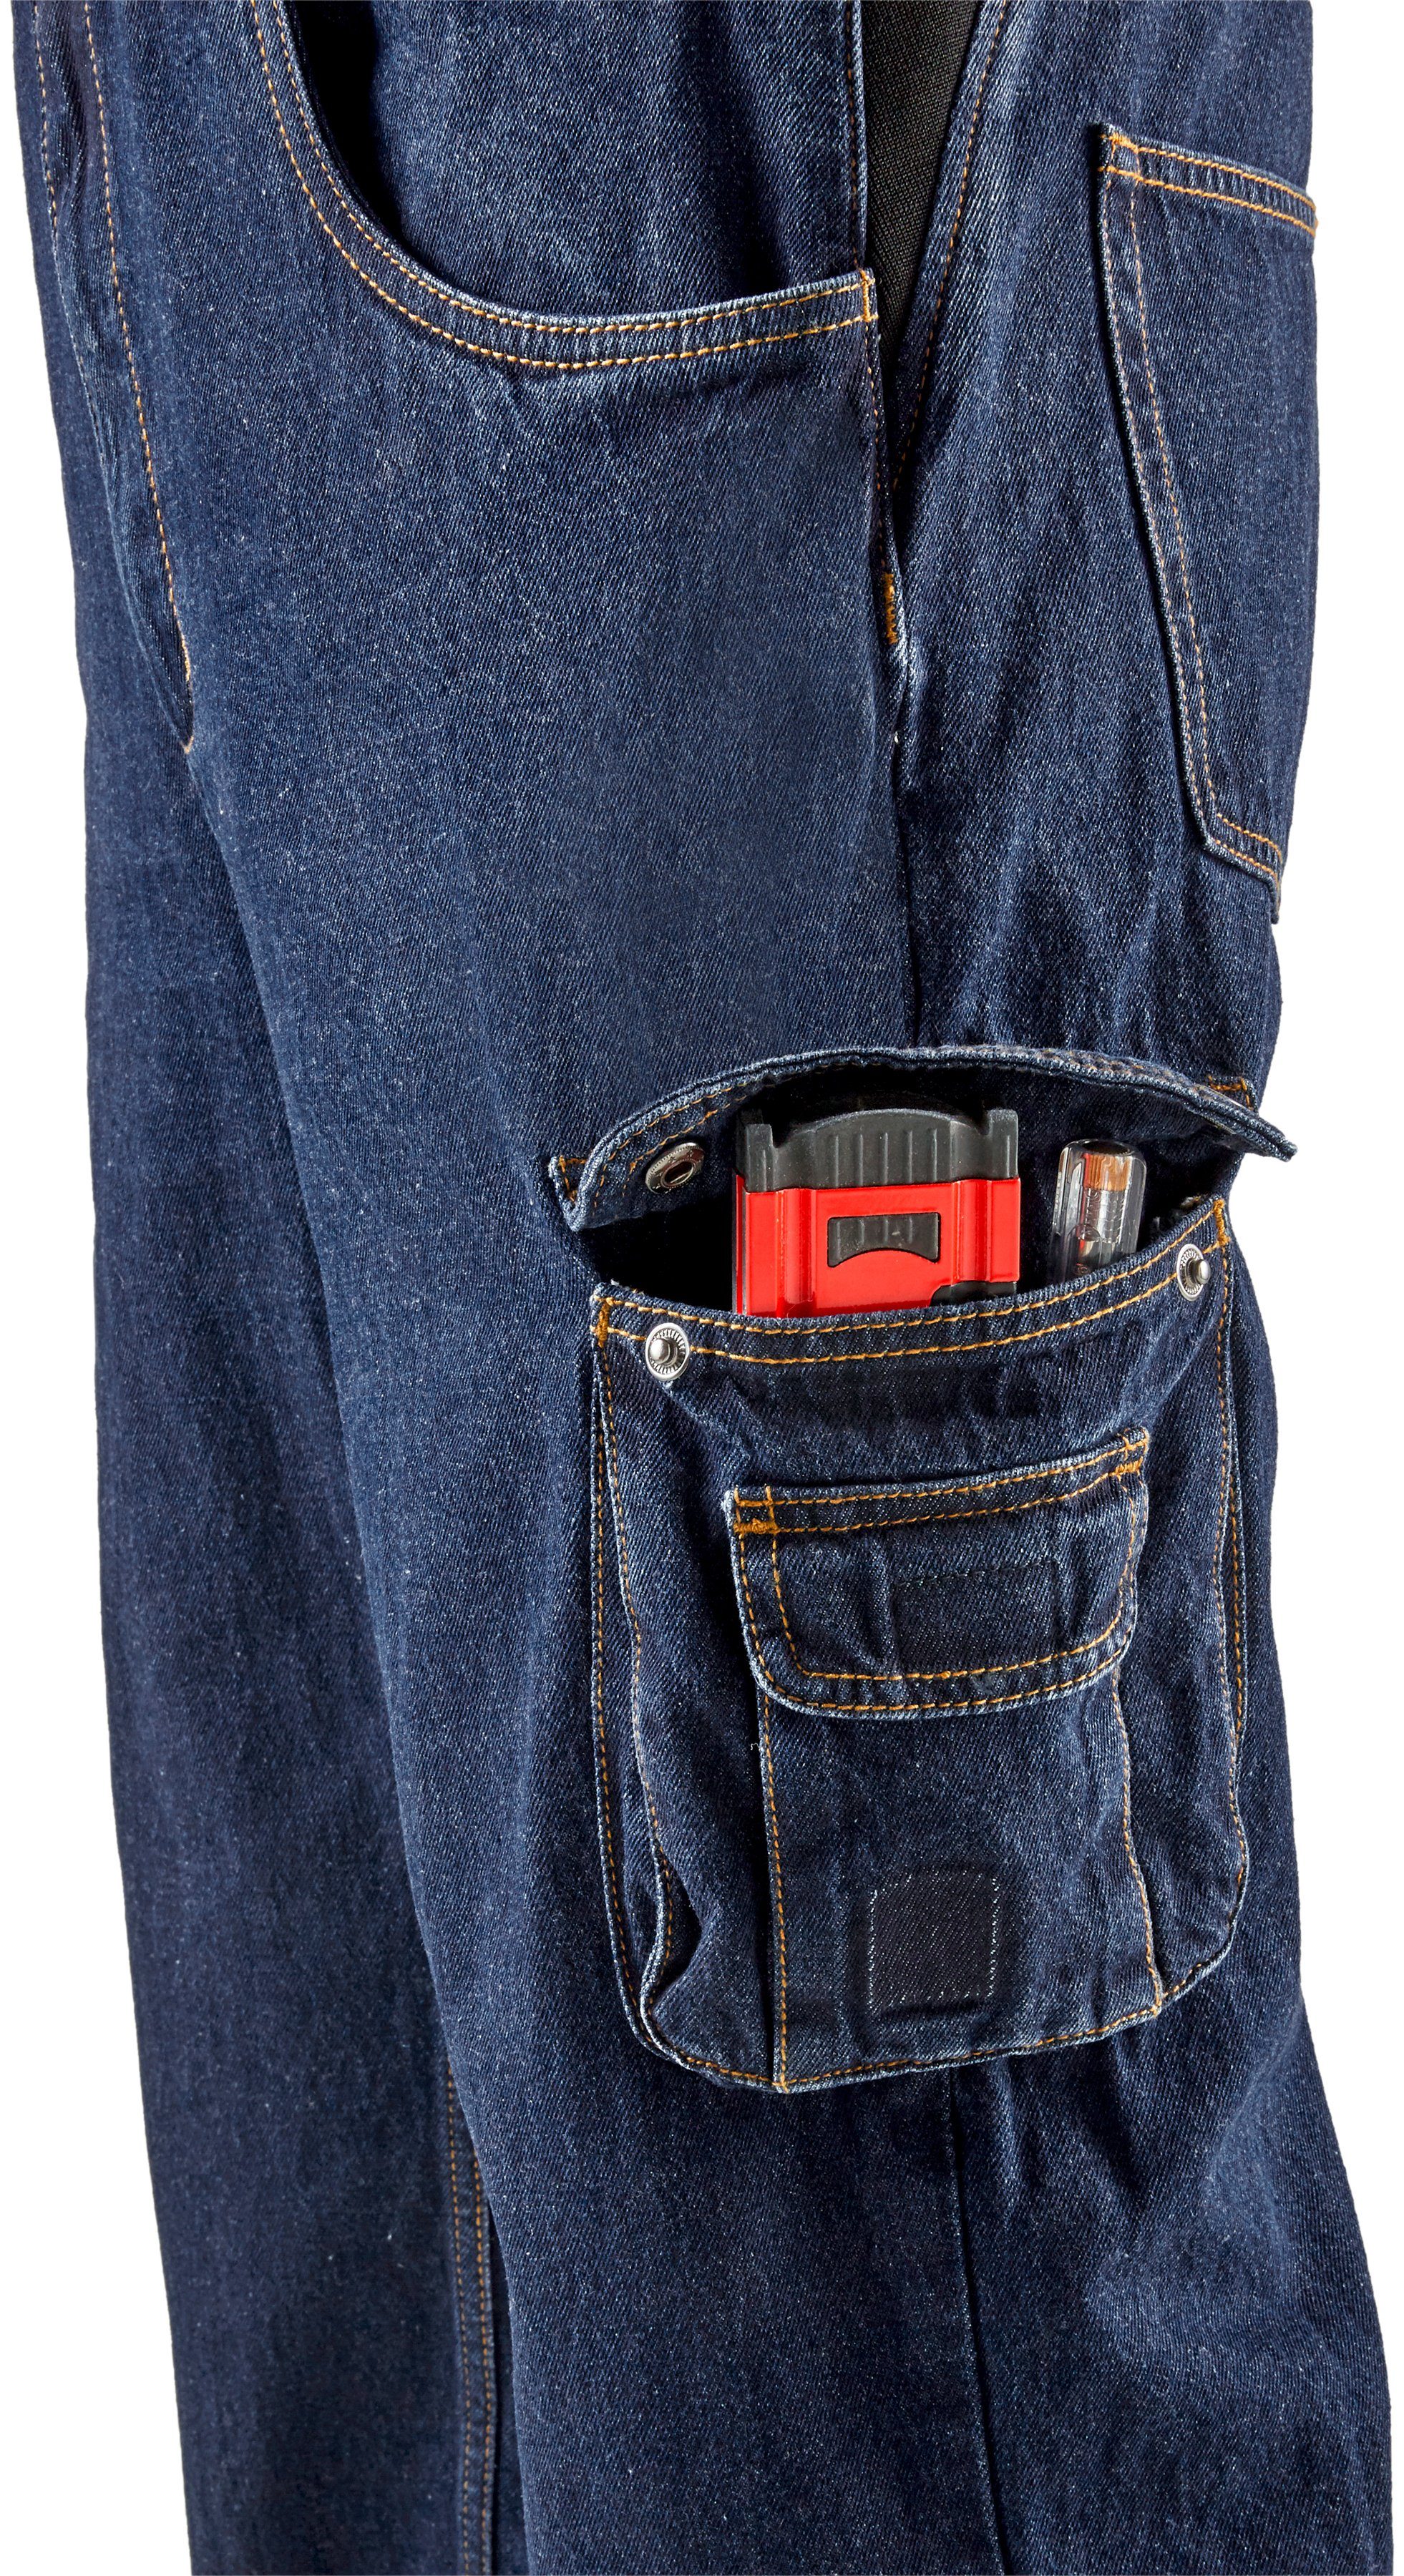 Baumwolle, mit dehnbarem comfort Jeans 100% langlebig fit) robuster und Latzhose Worker Country 11 strapazierfähig Jeansstoff, (aus Taschen, Northern Bund,